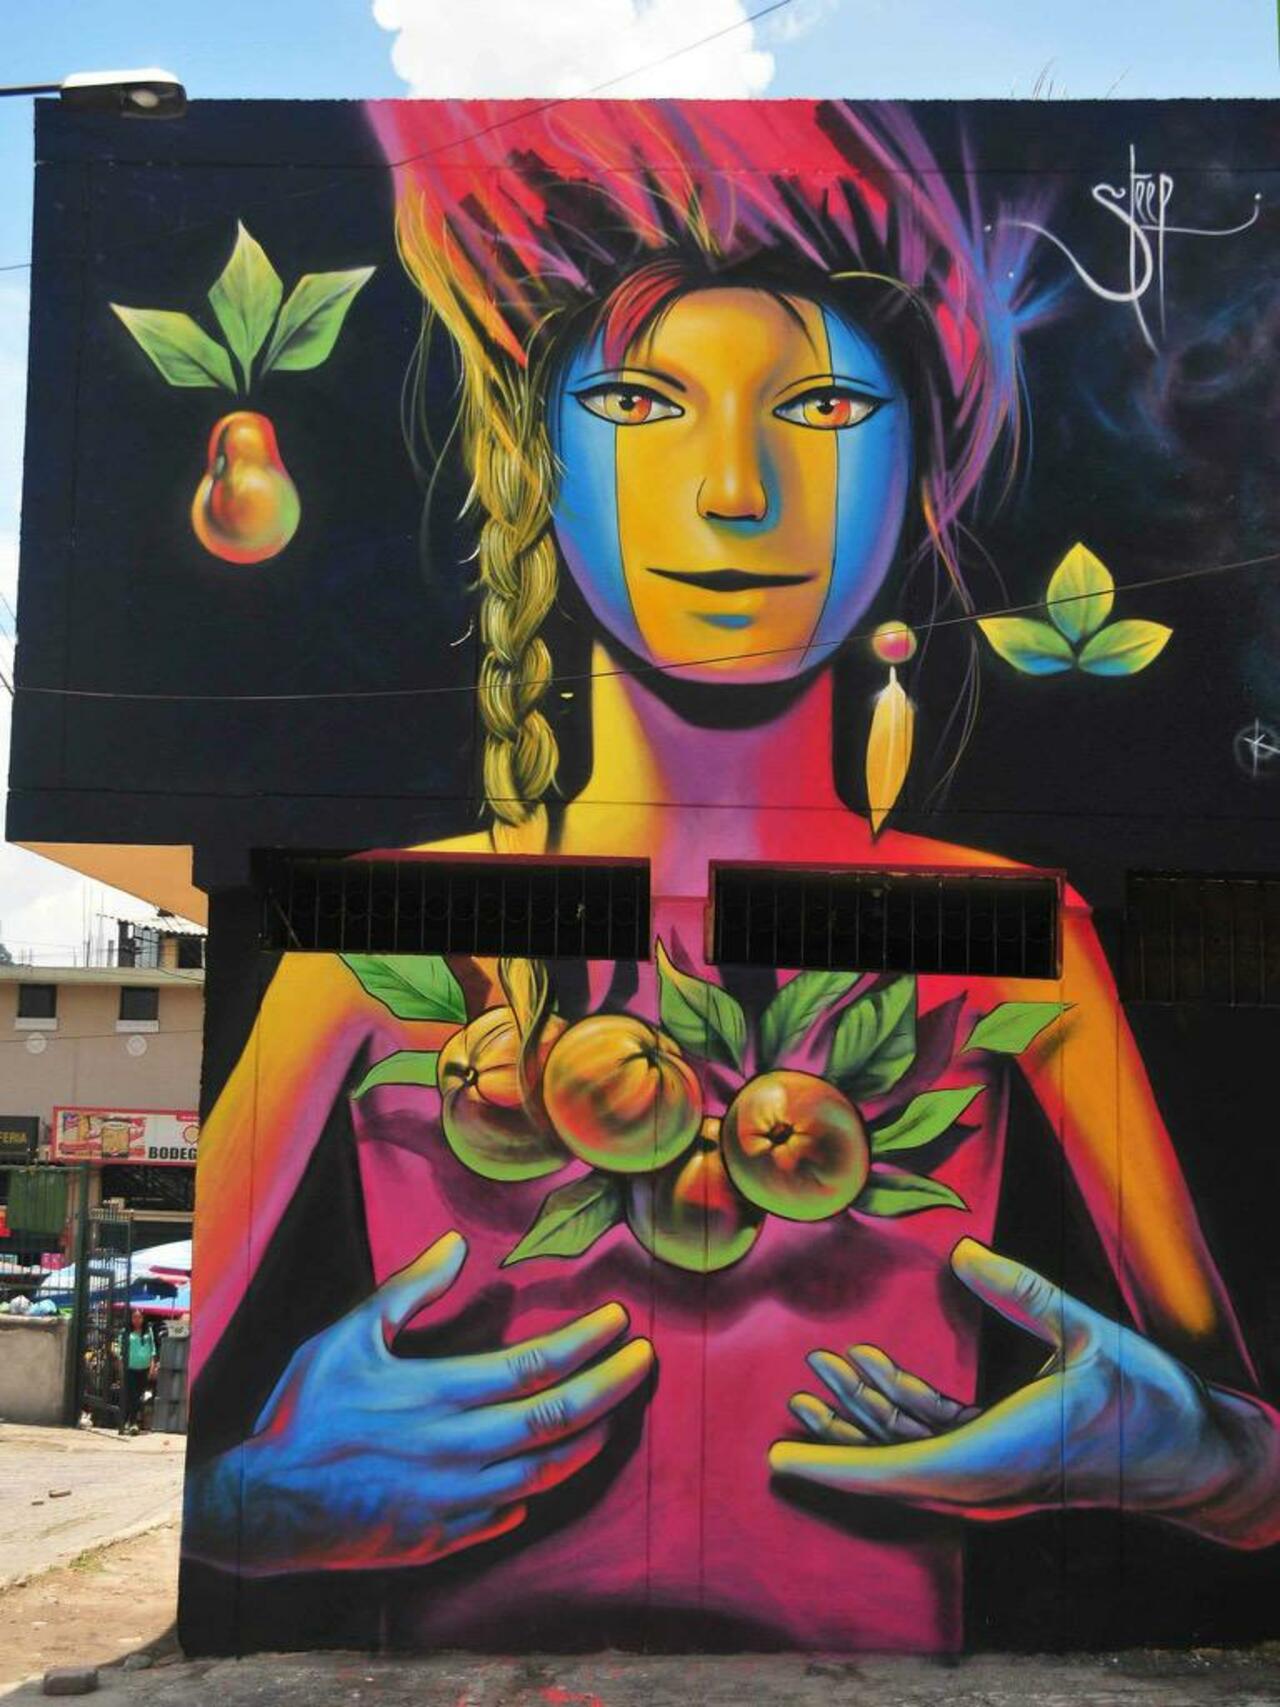 Street Art by Steep

#art #graffiti #mural #streetart http://t.co/Cjqdcsb805